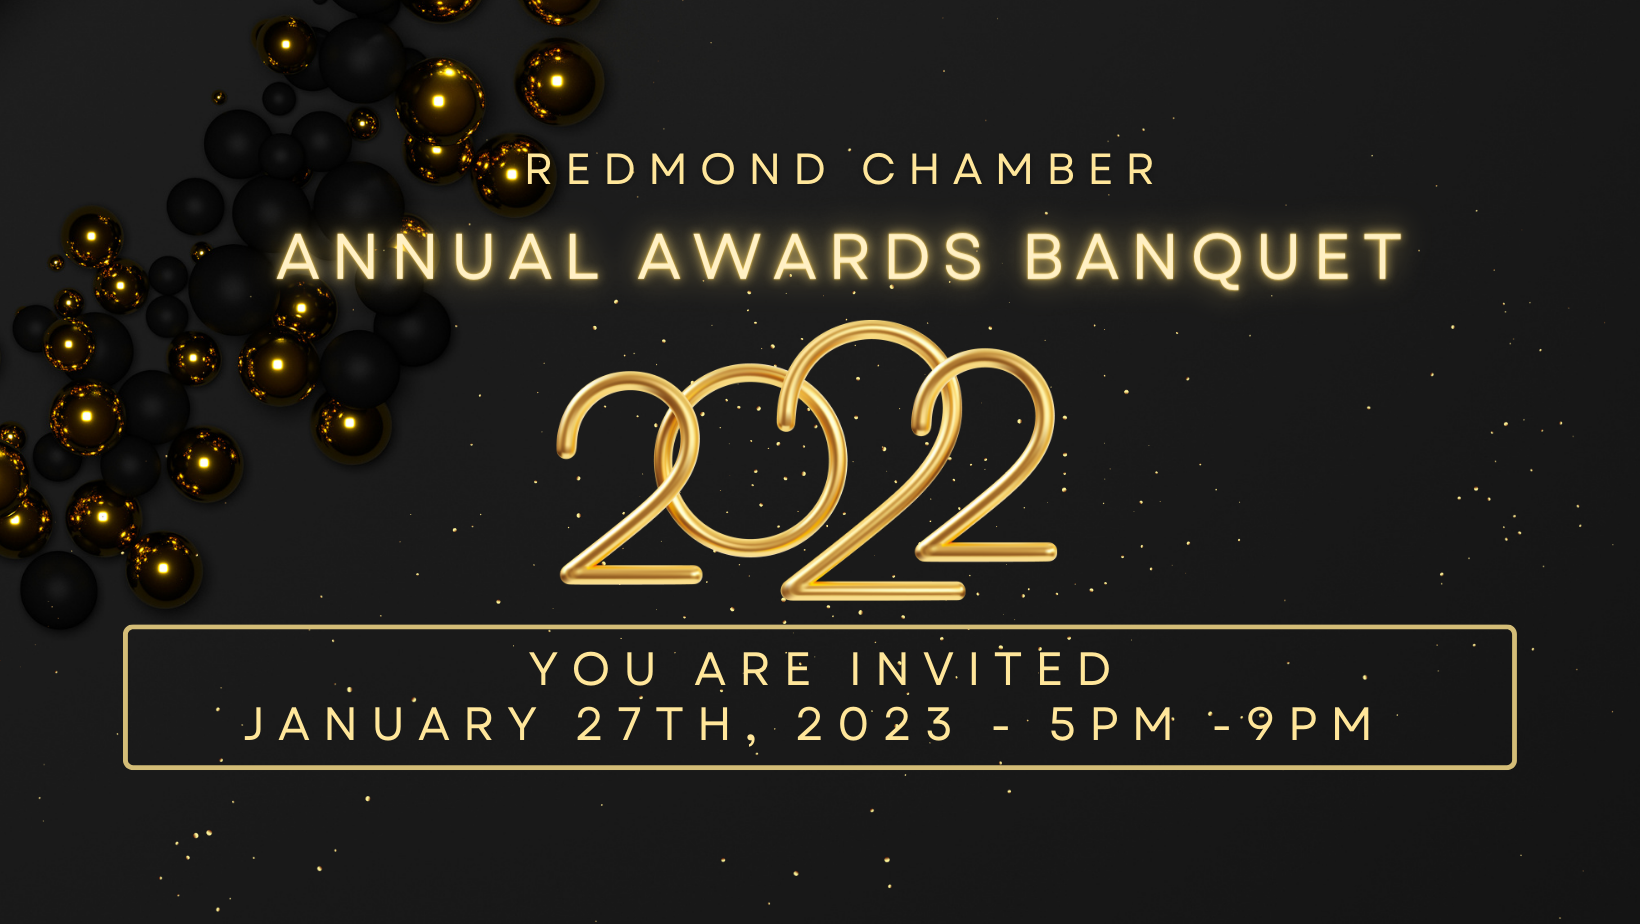 Redmond Chamber Annual Awards Banquet